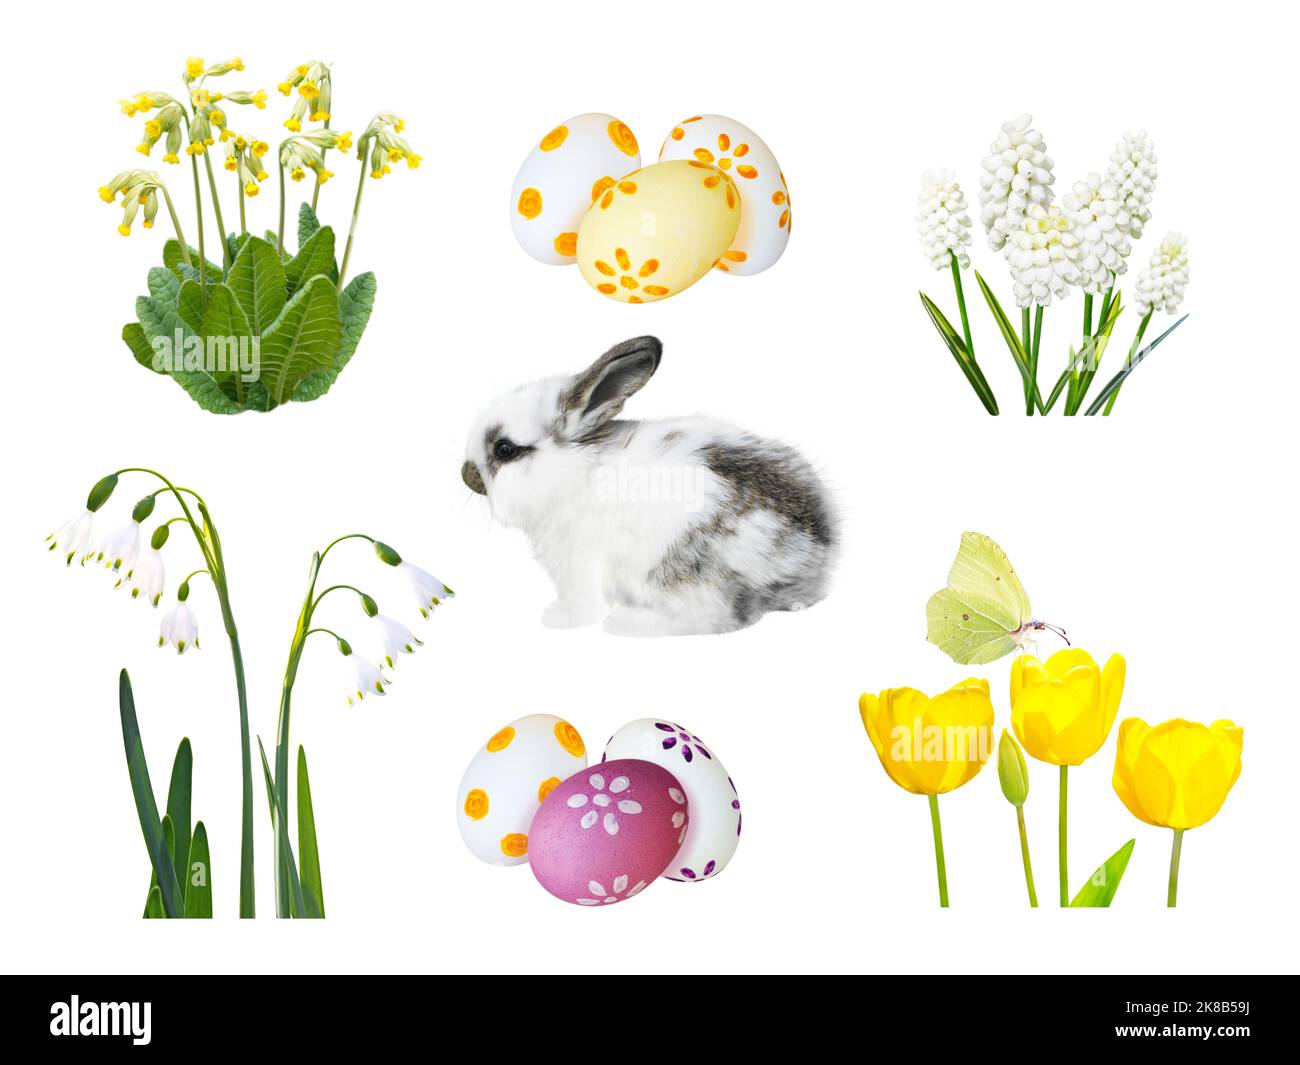 Piccolo coniglio spotty, uova di pasqua dipinte, snowdrop, muscari, cowslip, fiori di tulipano e farfalla isolato su bianco Foto Stock